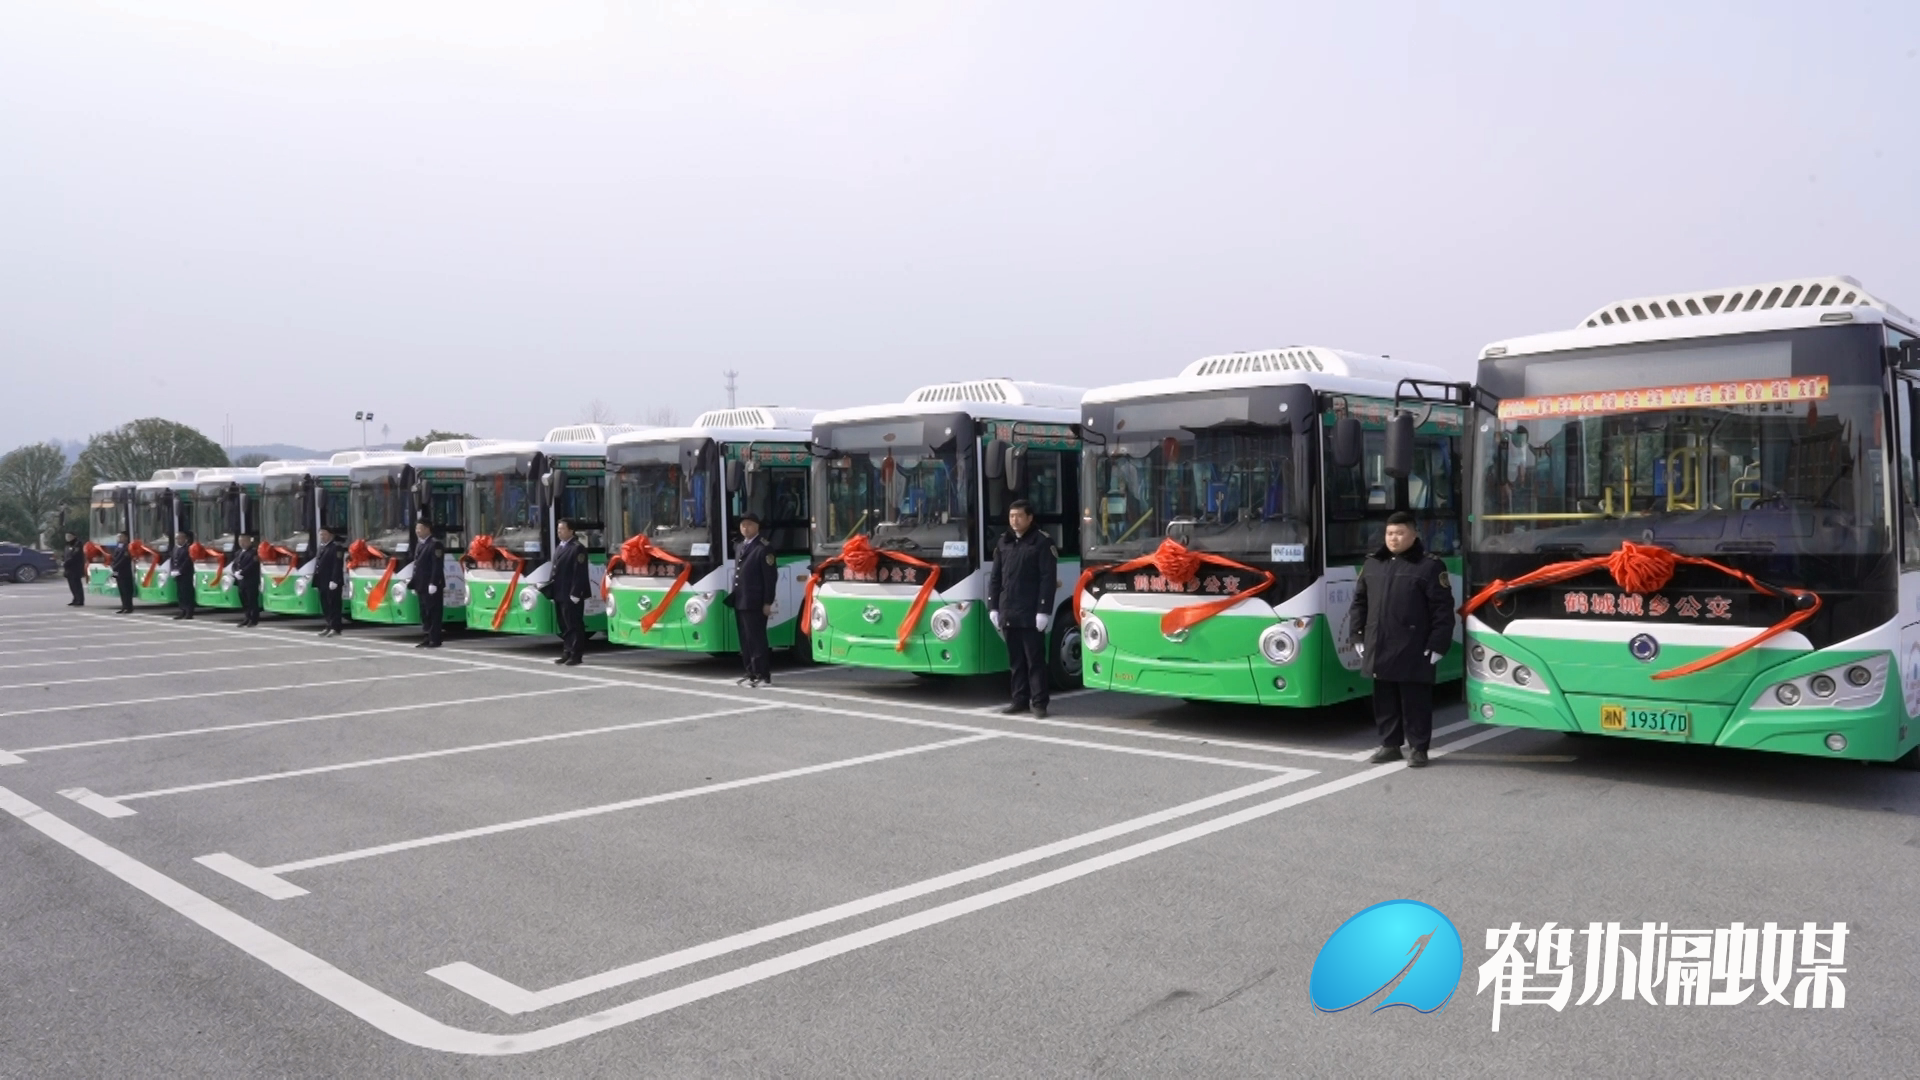 鹤城区城乡客运一体化开通 首批10条公交线路正式运行.mp4_20231221_160407.069.png